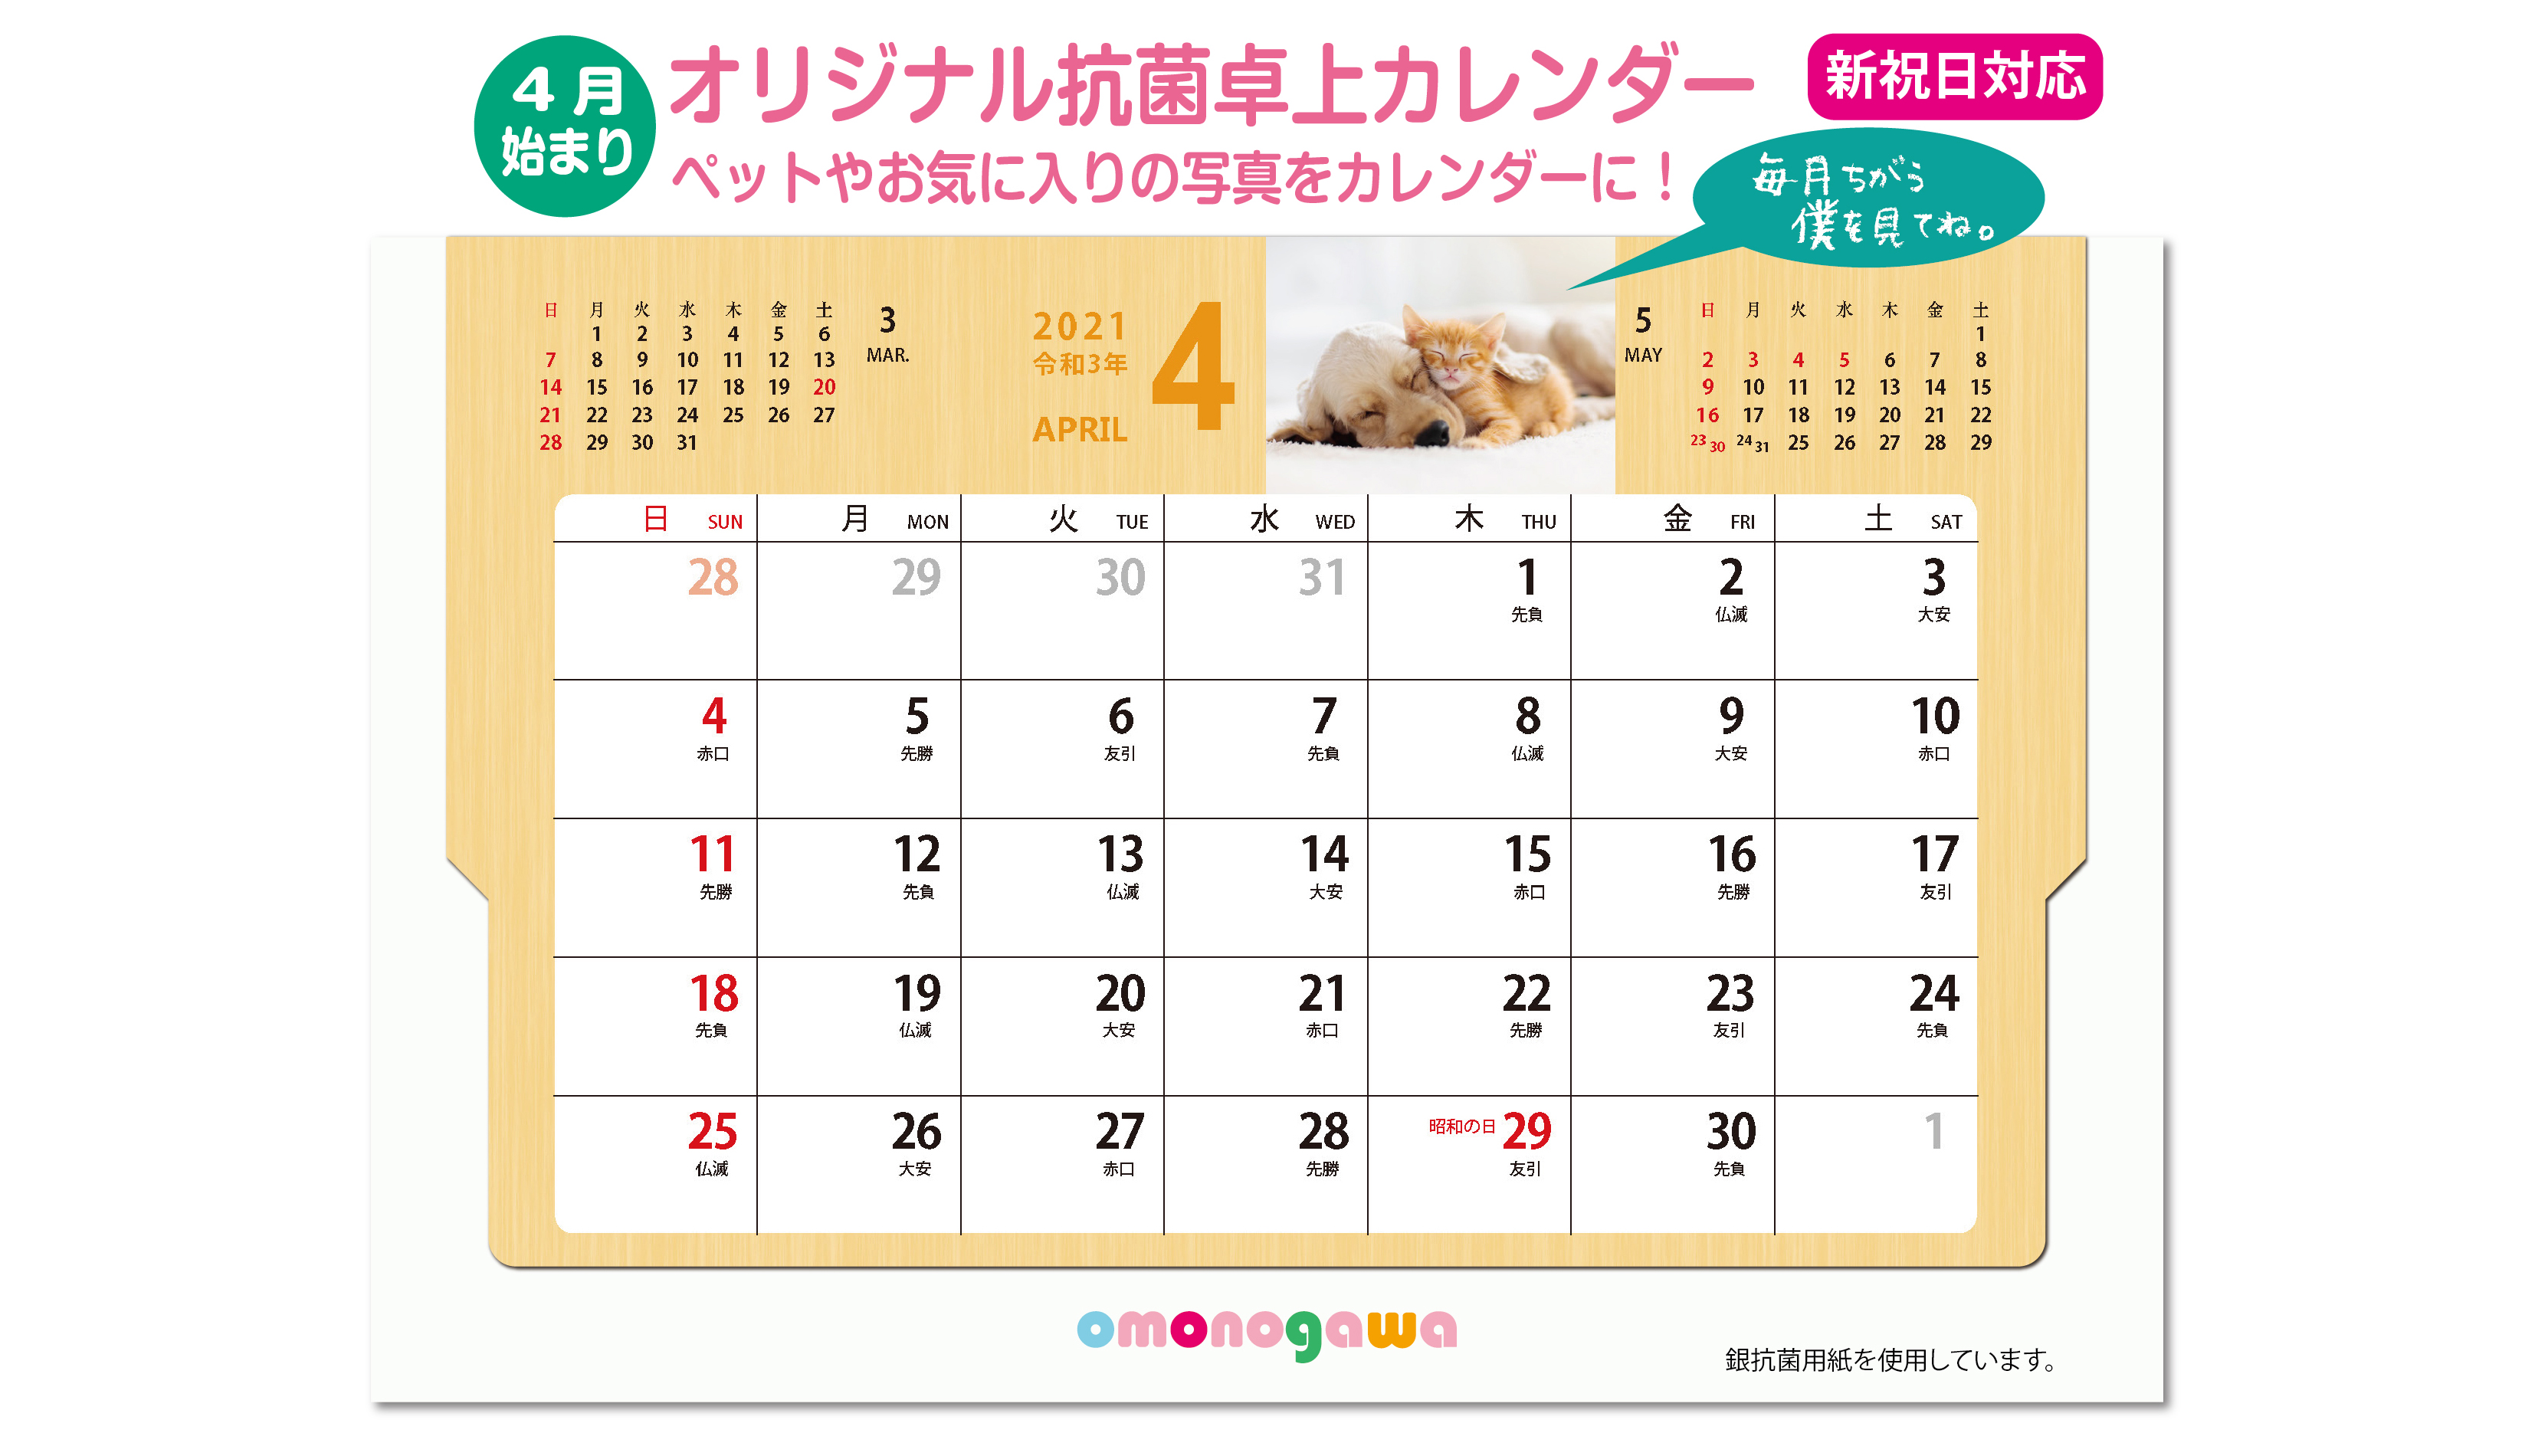 4月始まり・新祝日対応】「抗菌用紙」のみを使用した世界でたった一つの『オリジナル卓上カレンダー』を提供。 | NEWSCAST